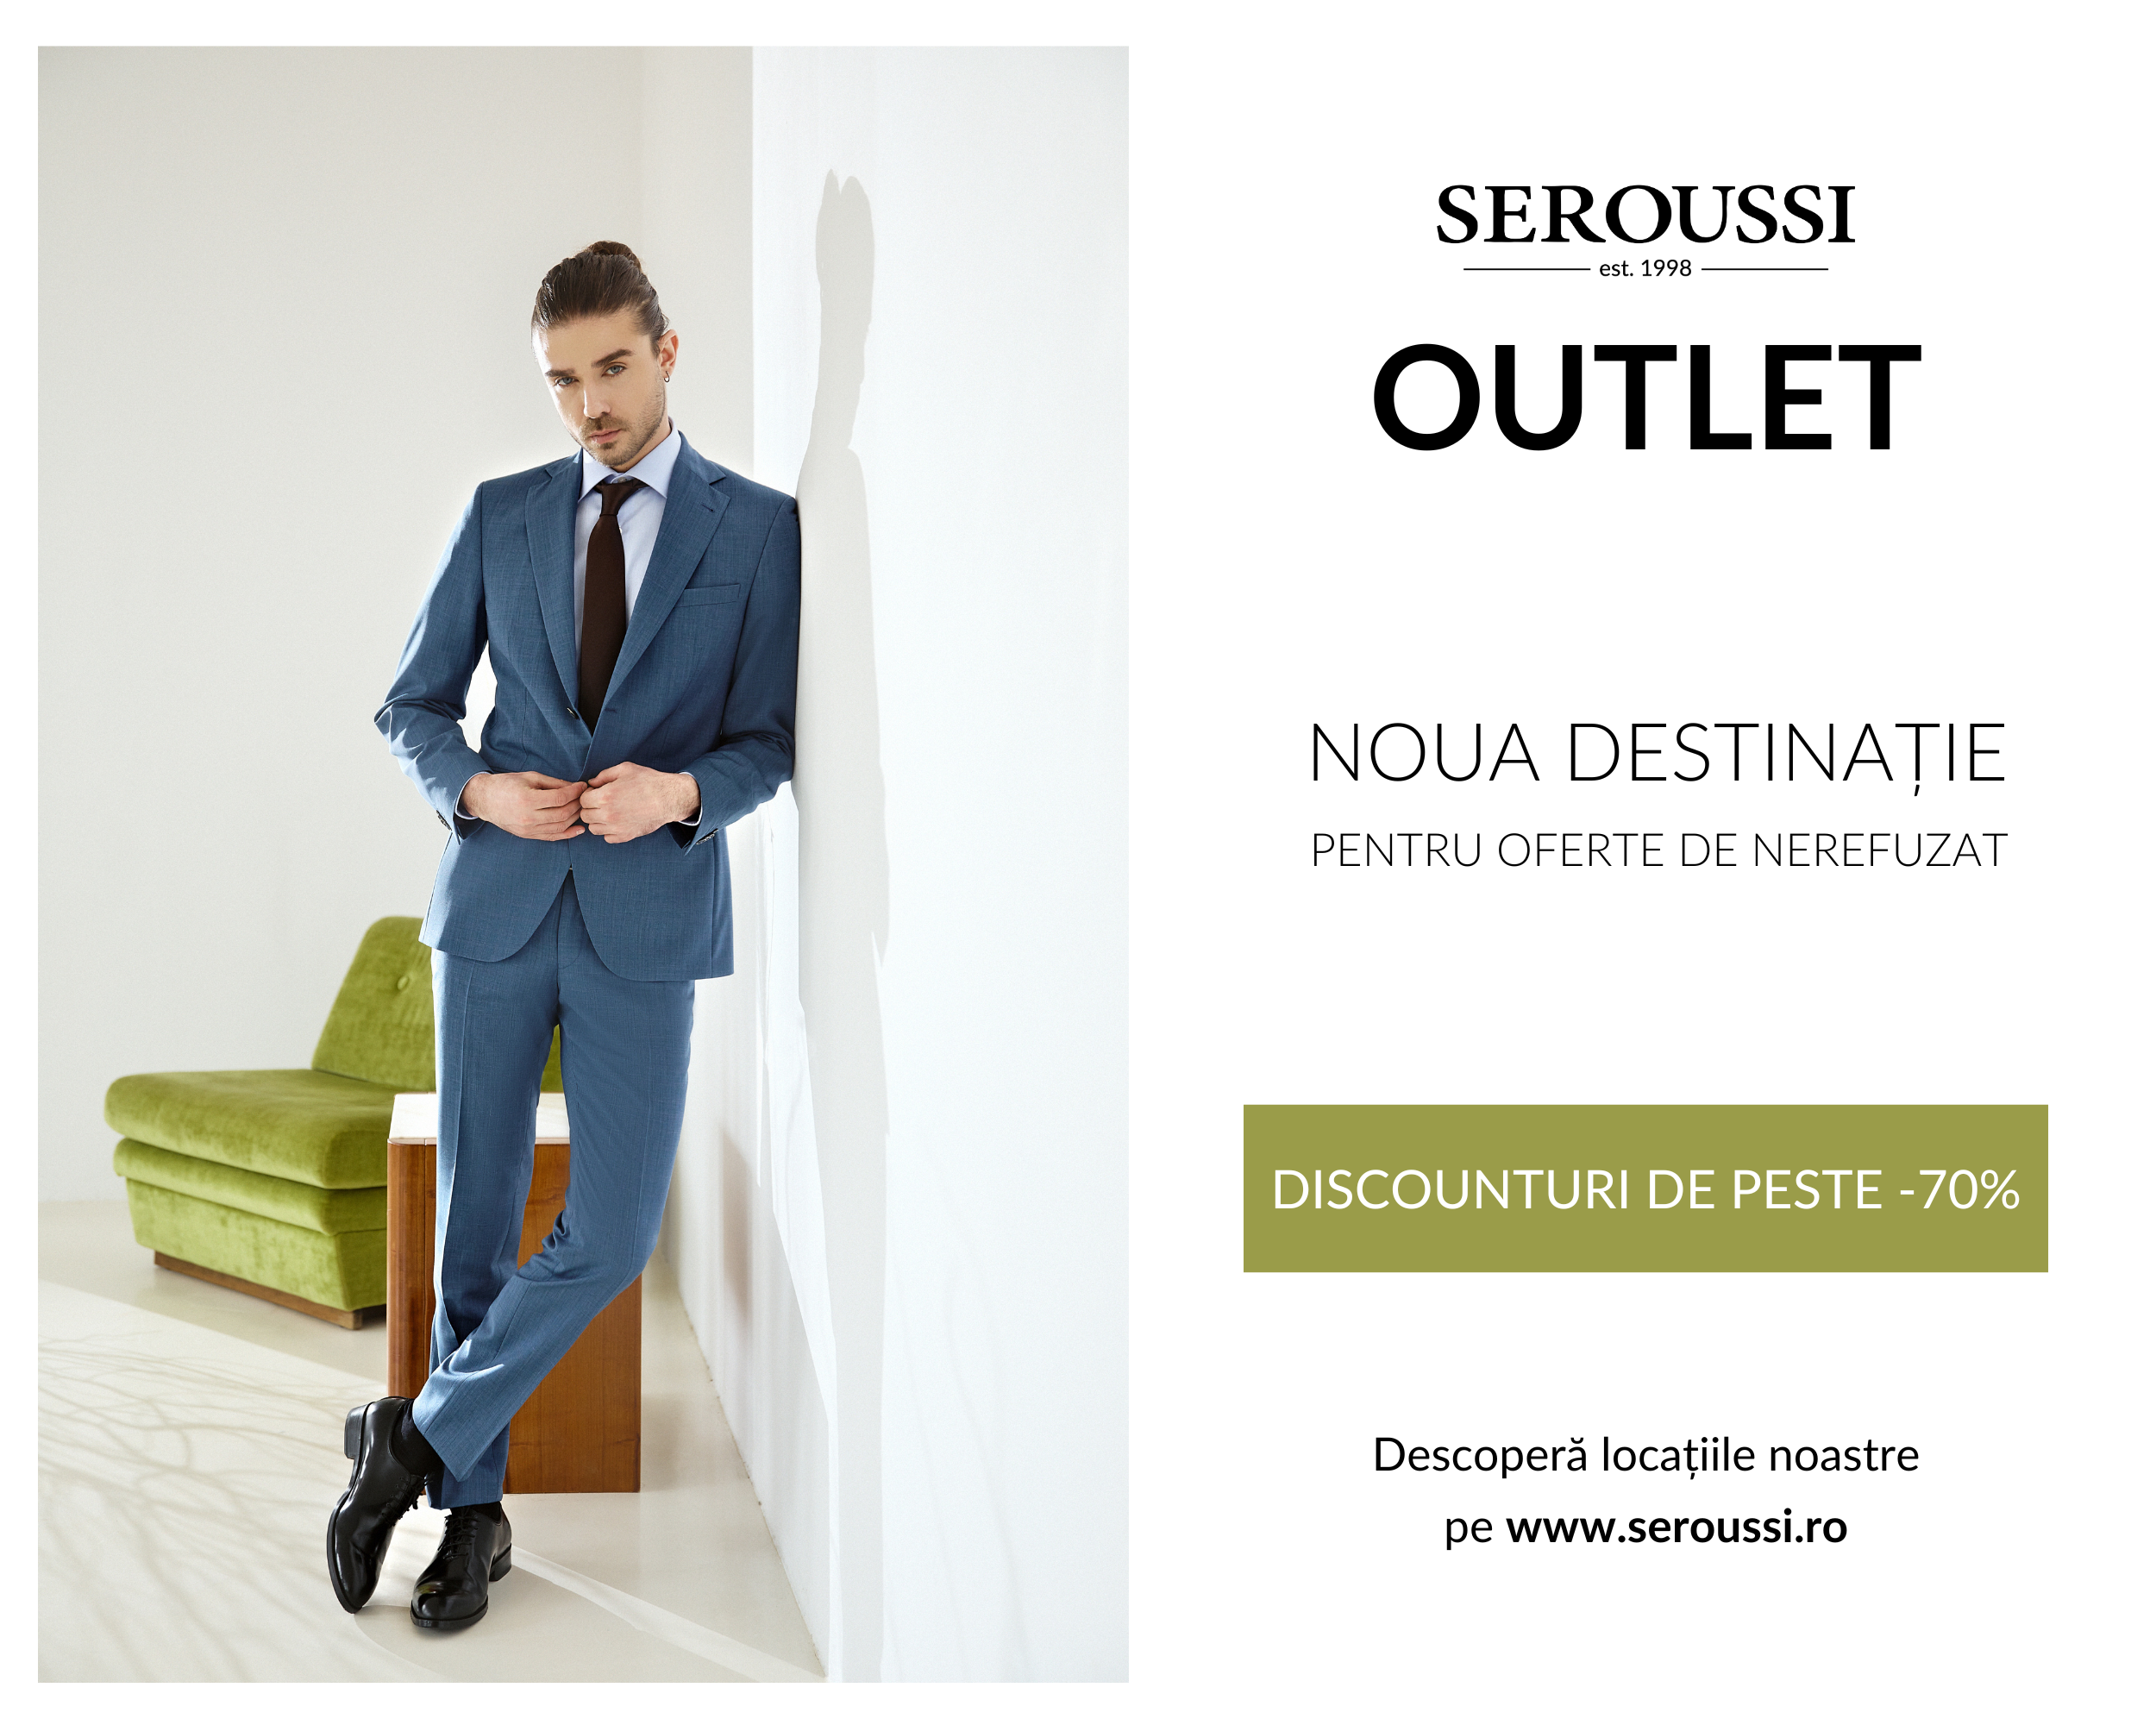 Brandul SEROUSSI a deschis primul outlet în București